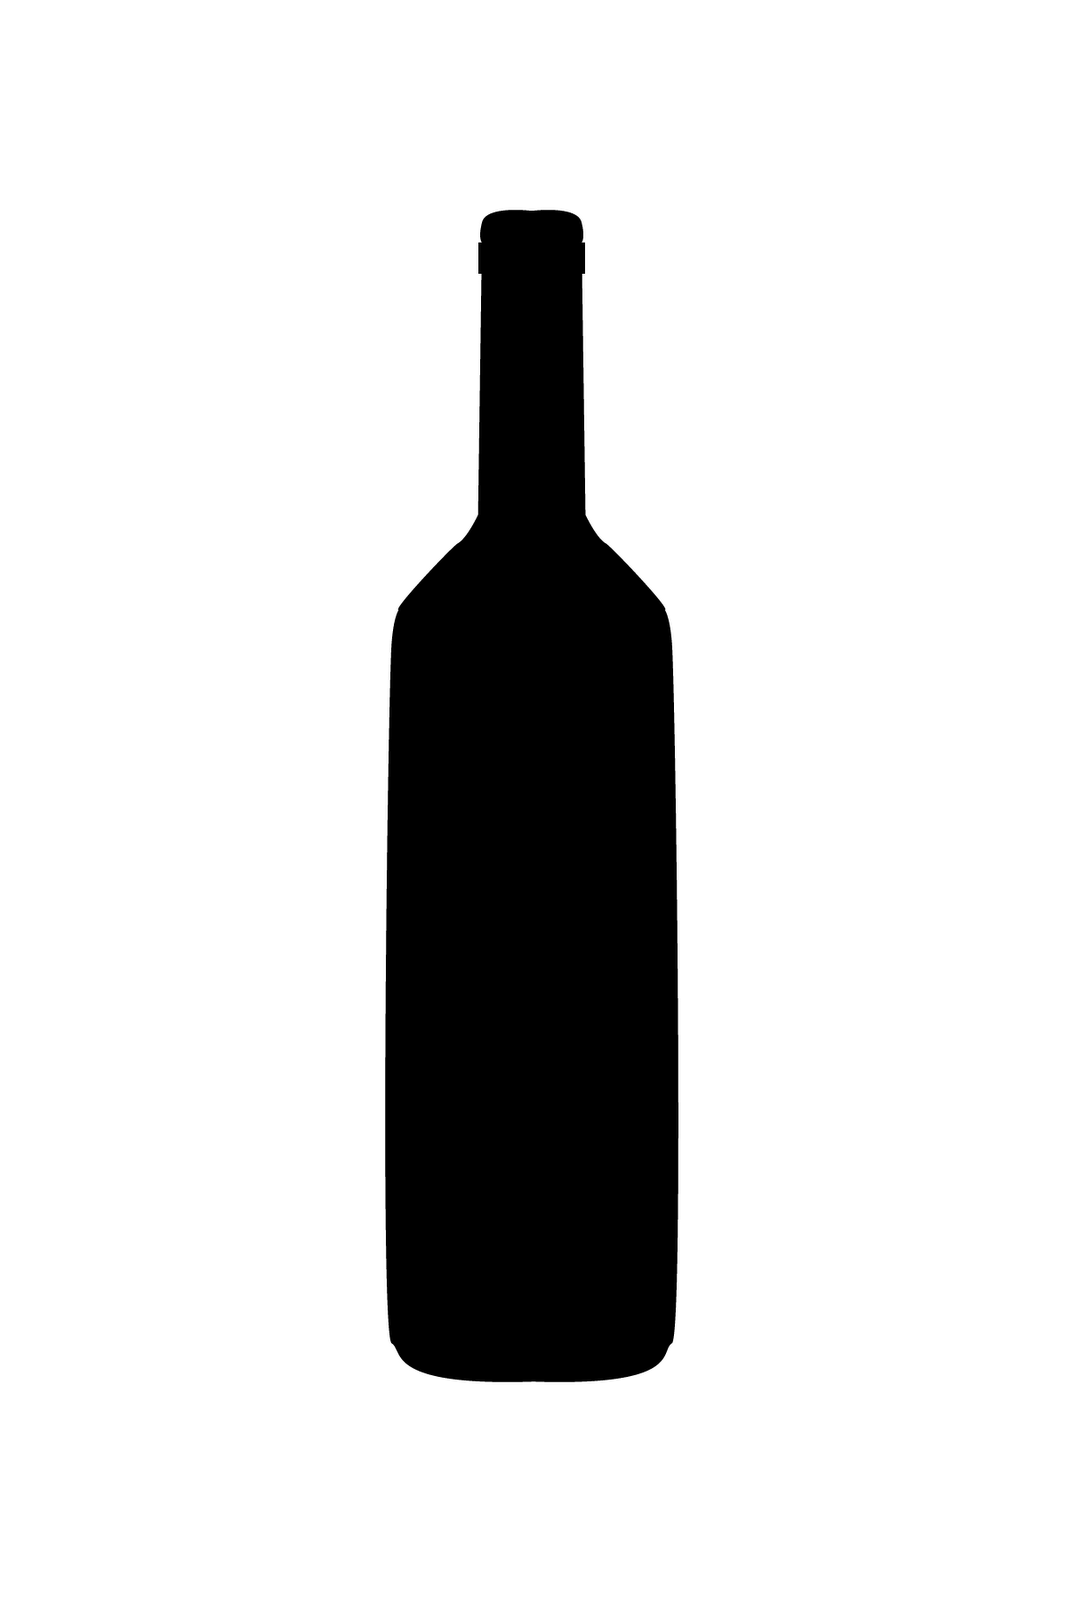 Wallpaper Wine Bottle Silhouette - ClipArt Best